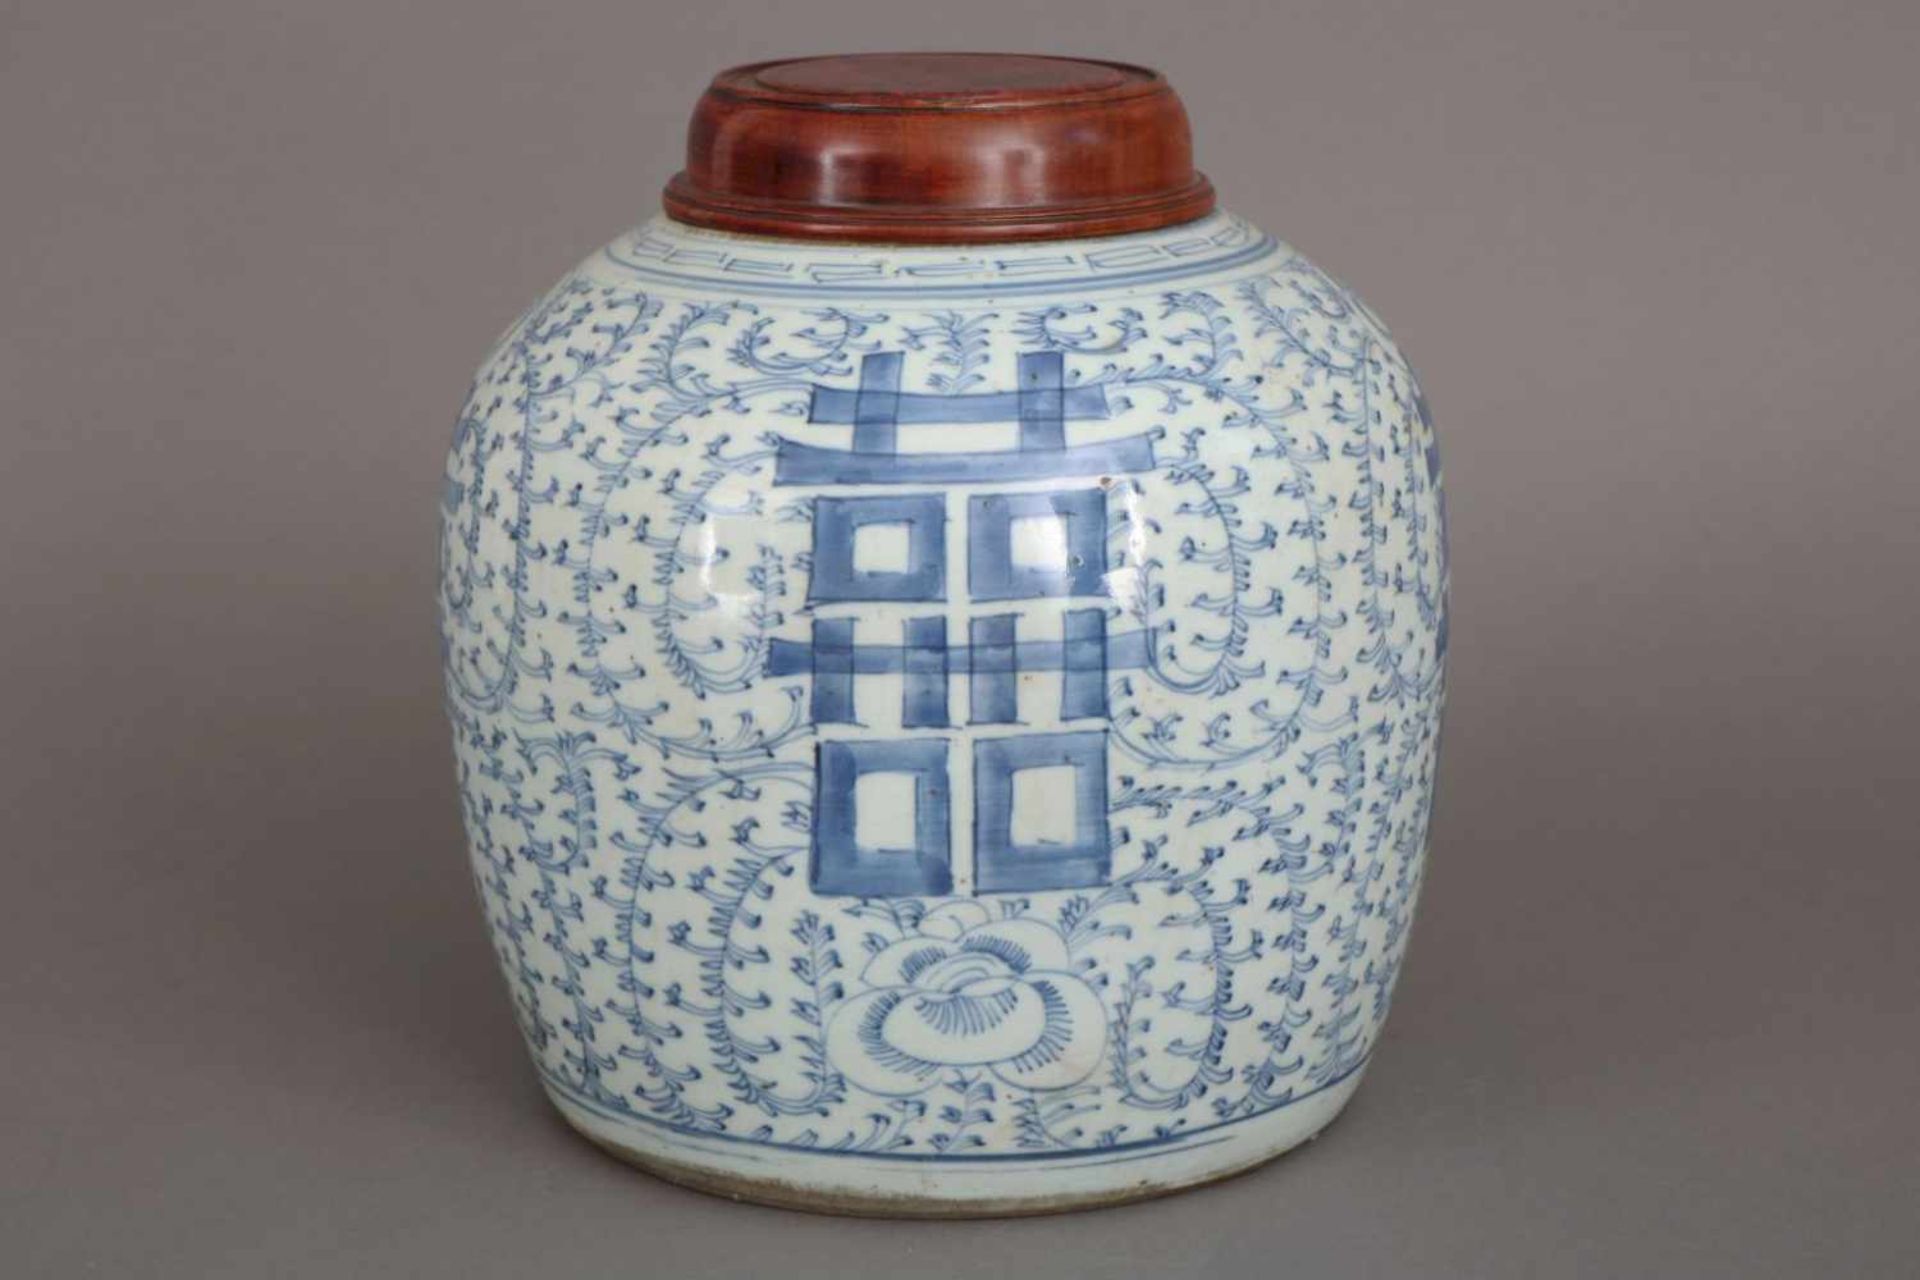 Chinesischer IngwertopfPorzellan und Holz, Qing Dynastie (1644-1912), bauchiges Gefäß mit